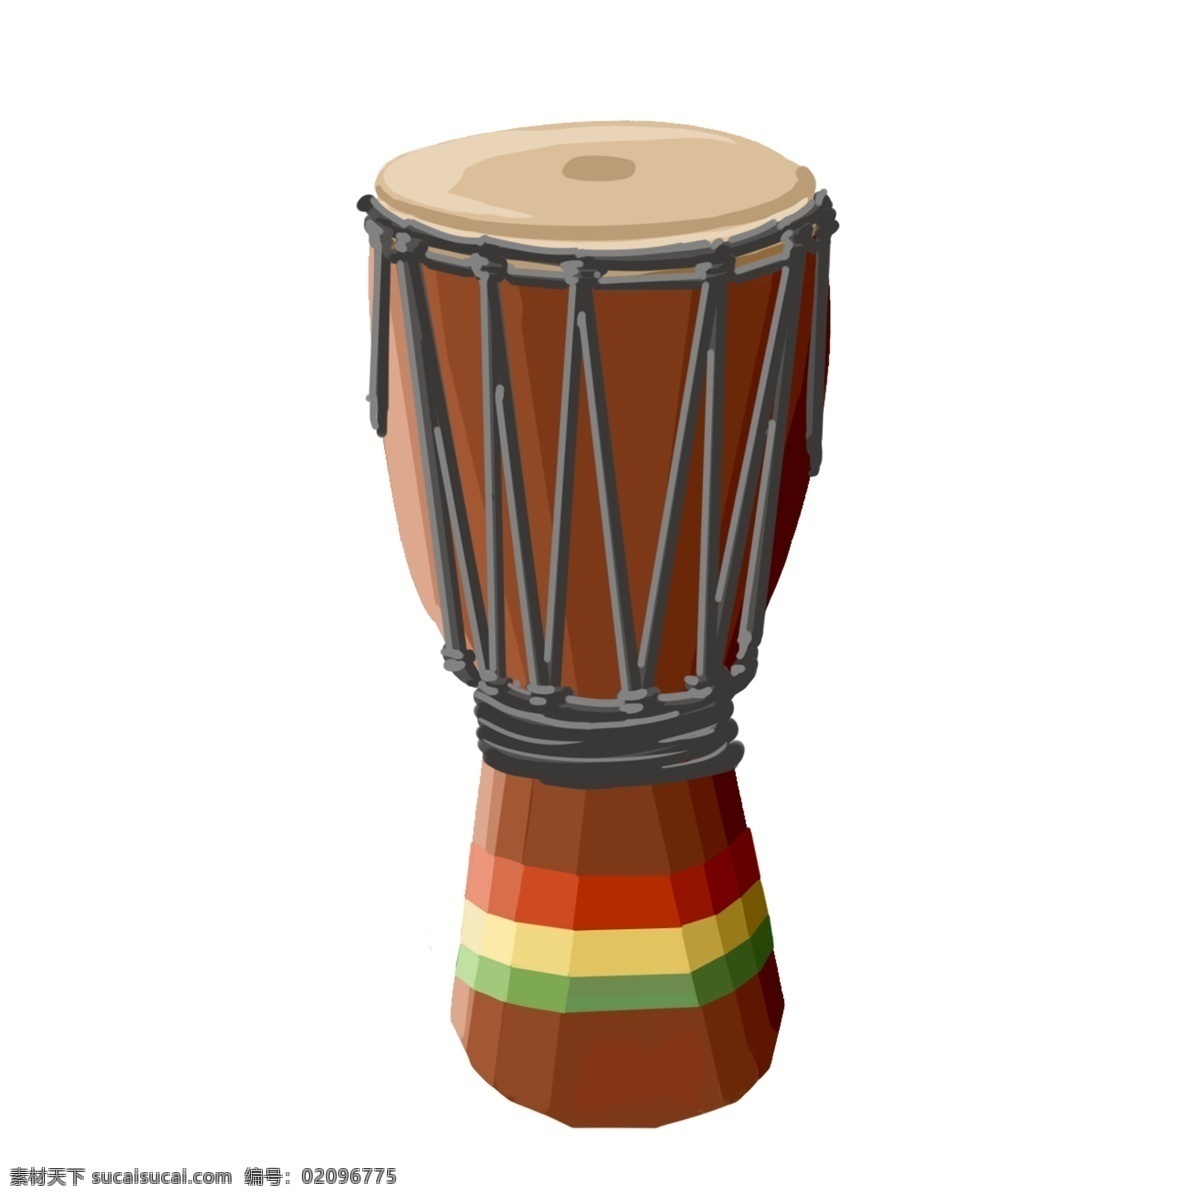 手绘 非洲 鼓 插画 卡通插画 创意插画 棕色的非洲鼓 漂亮的非洲鼓 进口的非洲鼓 国产的非洲鼓